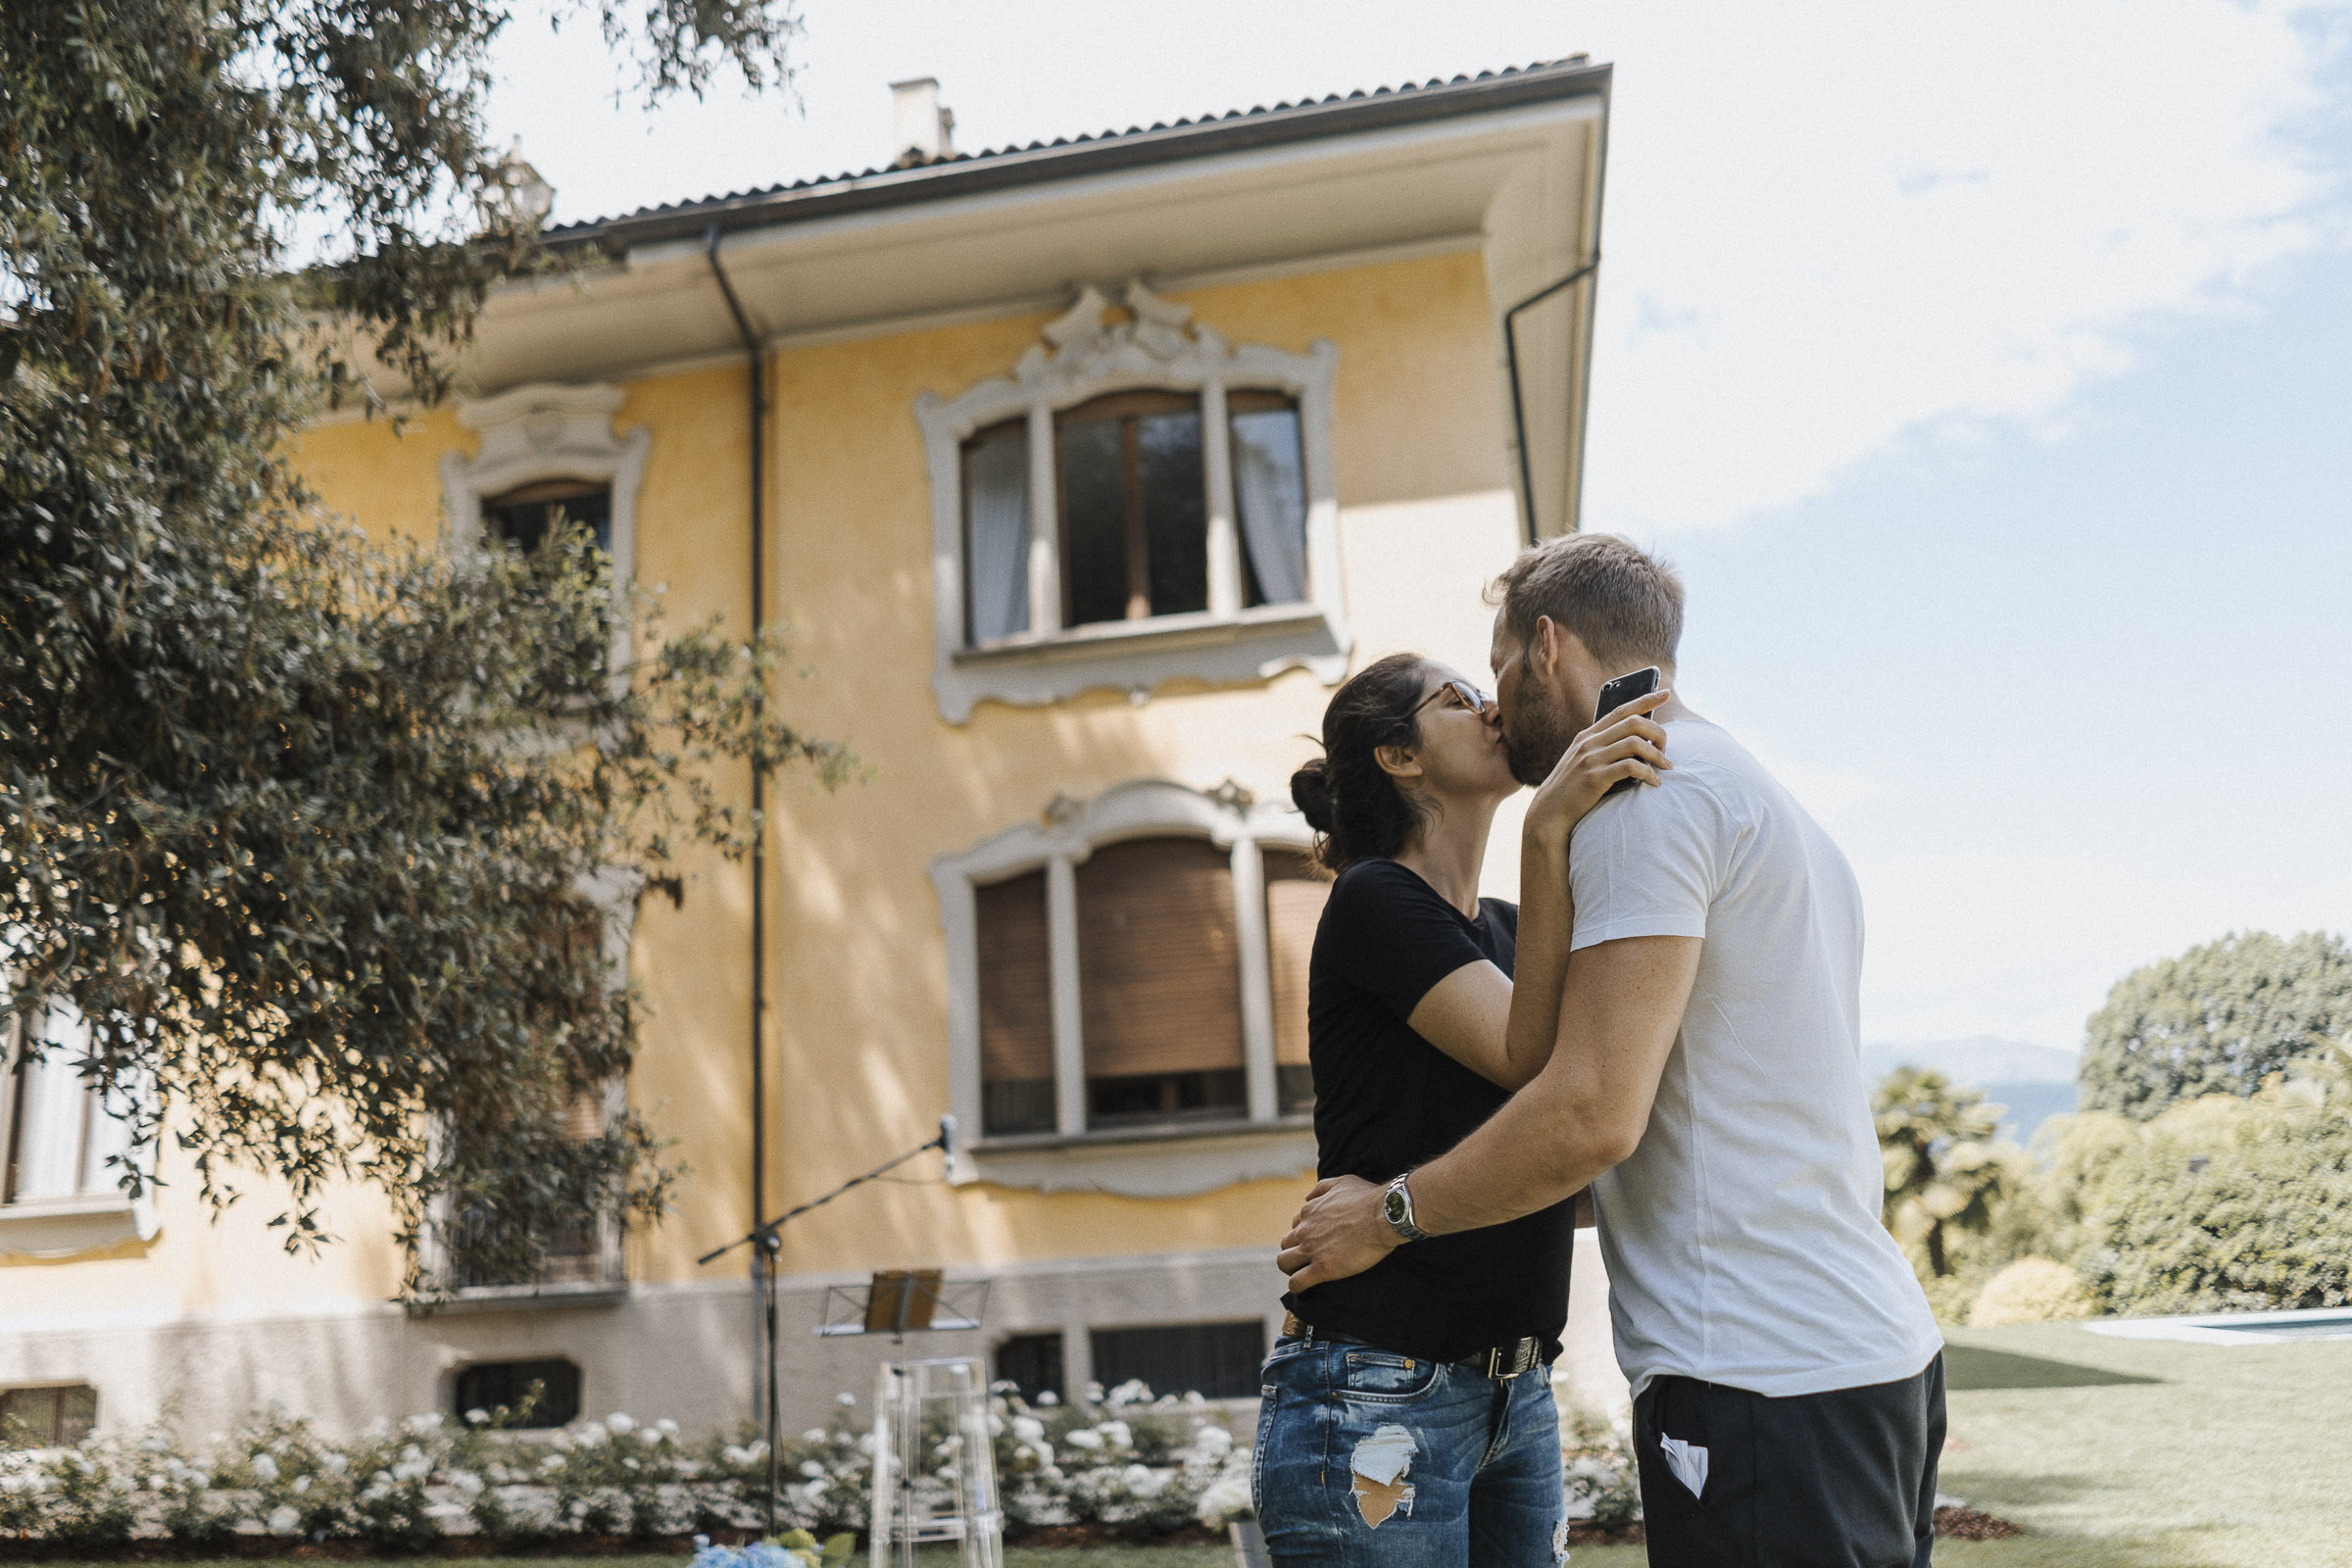 Hochzeit in Italien: Braut und Bräutigam küssend vor der Villa, beide noch nicht umgezogen für die Hochzeit